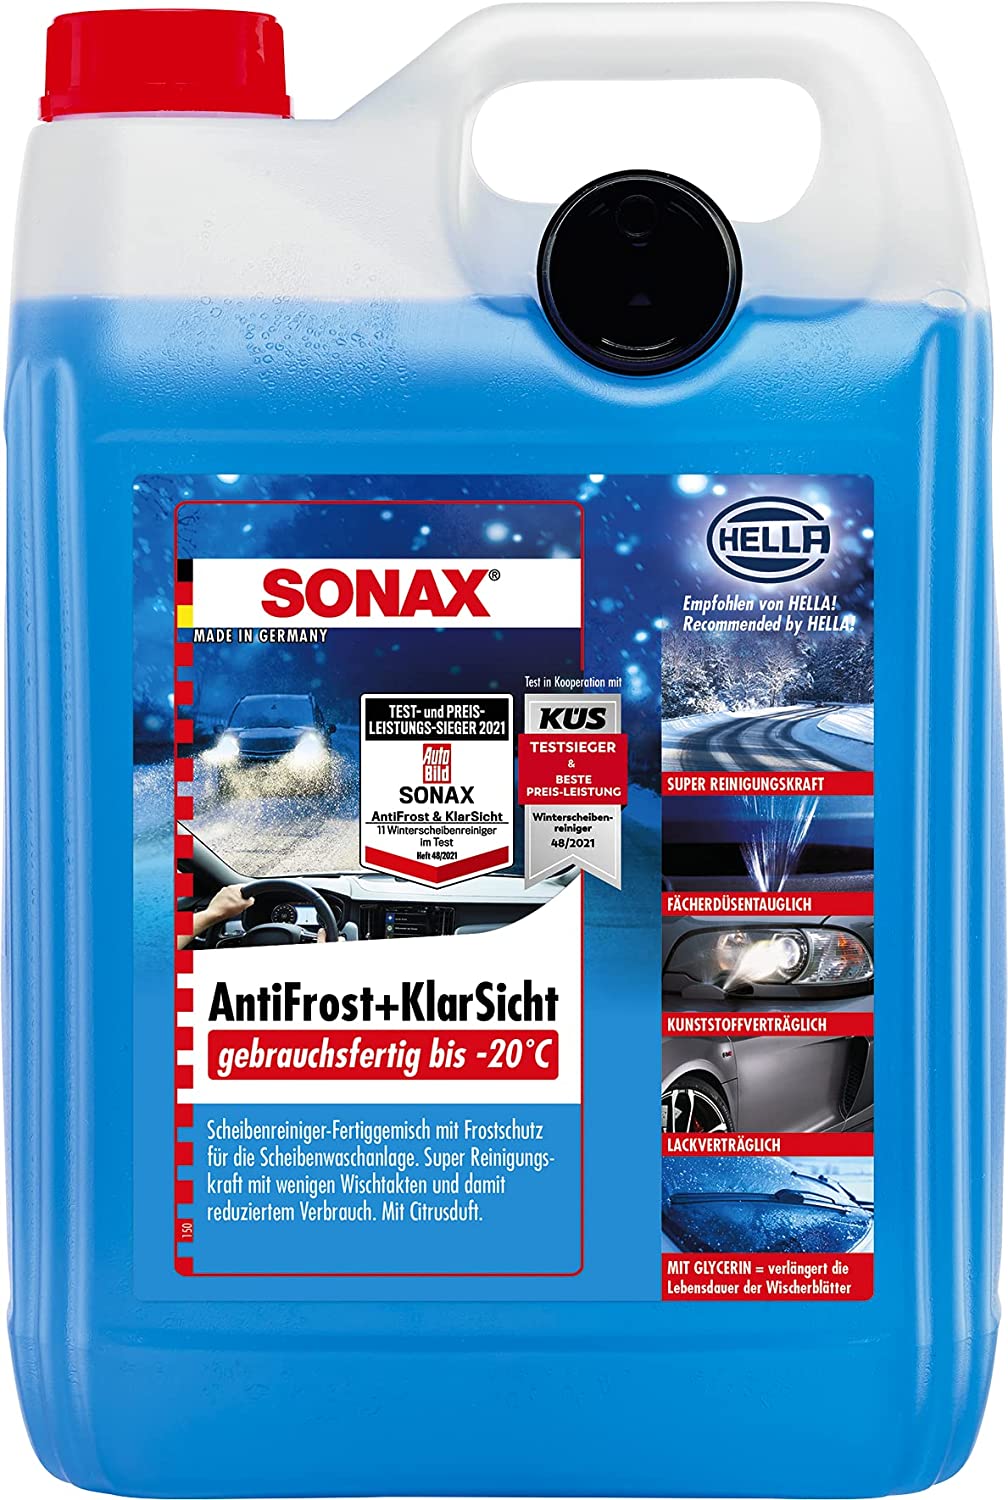 SONAX AntiFrost&KlarSicht Ice-Fresh Scheibenfrostschutz Scheibenreiniger  4x5L